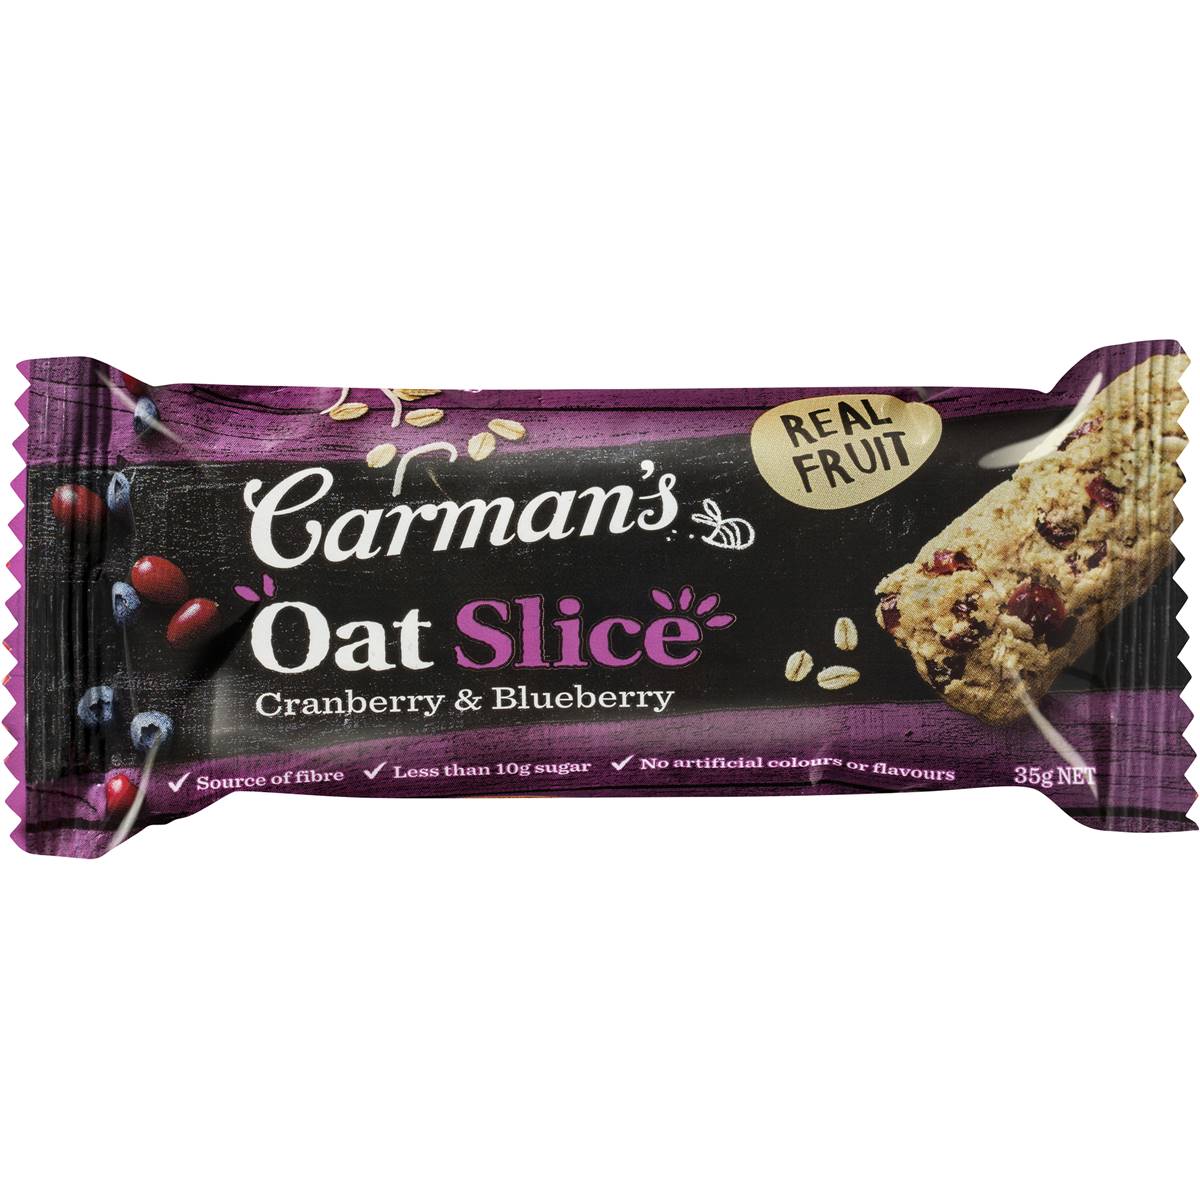 Carman's Oat Slice - Cranberry & Blueberry 35g